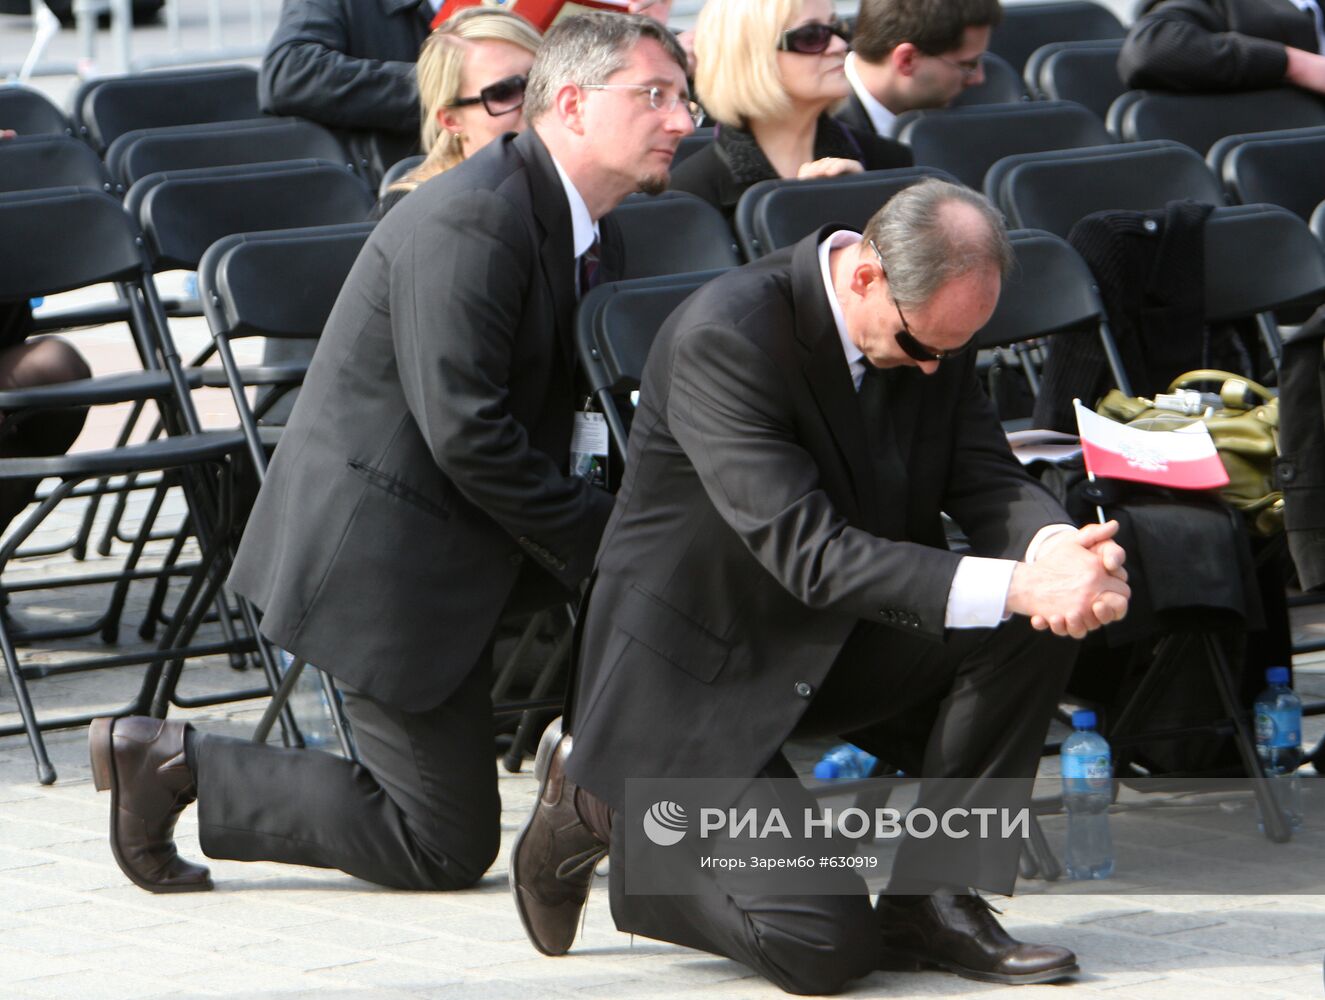 Похороны президента Польши прошли в Кракове